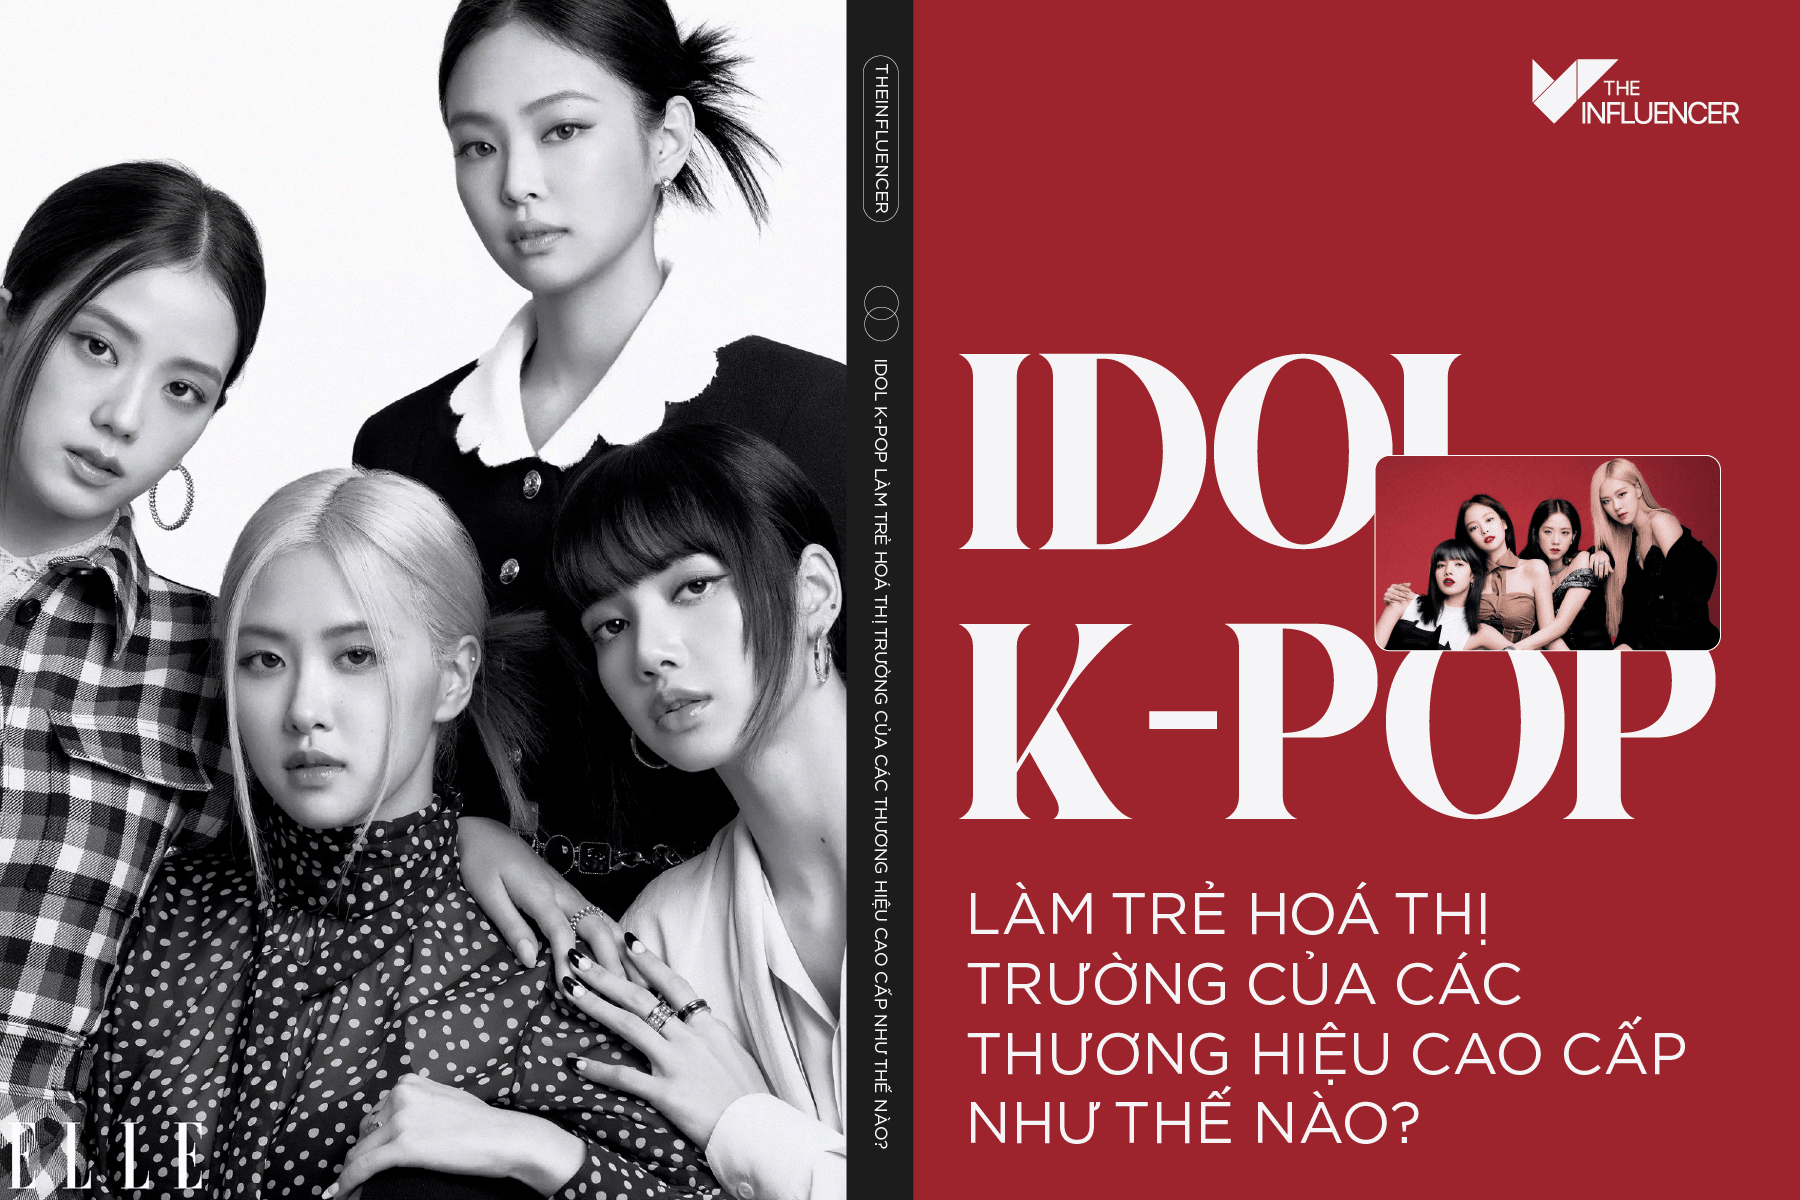 Idol K-pop làm trẻ hoá thị trường của các thương hiệu cao cấp như thế nào?